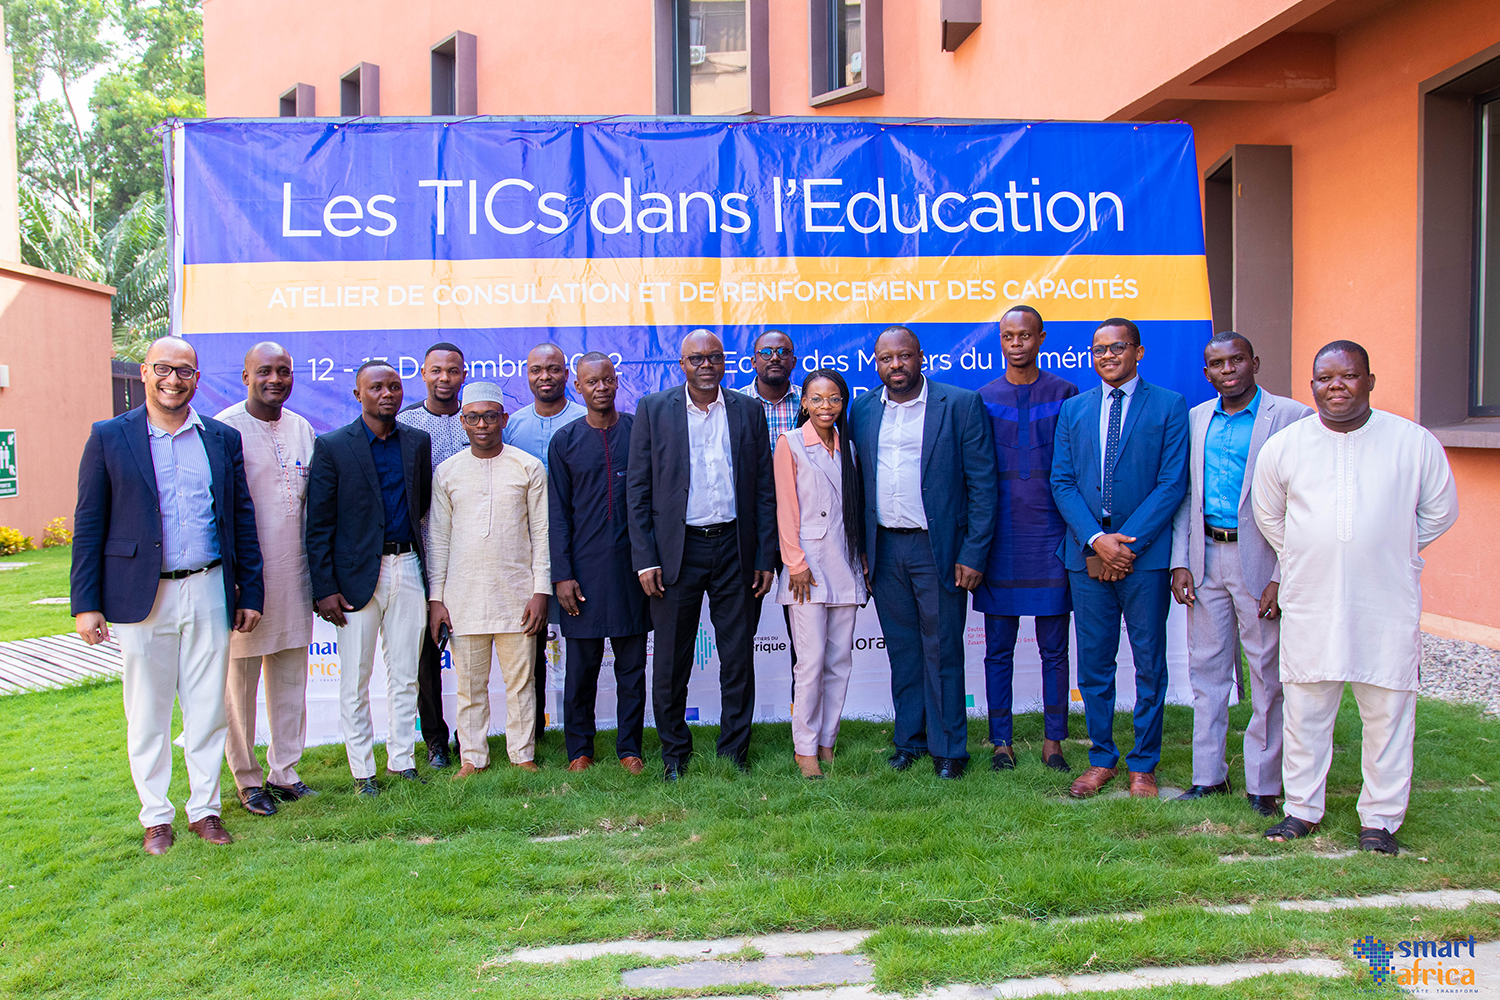 Atelier de consultation et de renforcement des capacités sur les TICs dans le domaine de l’Education